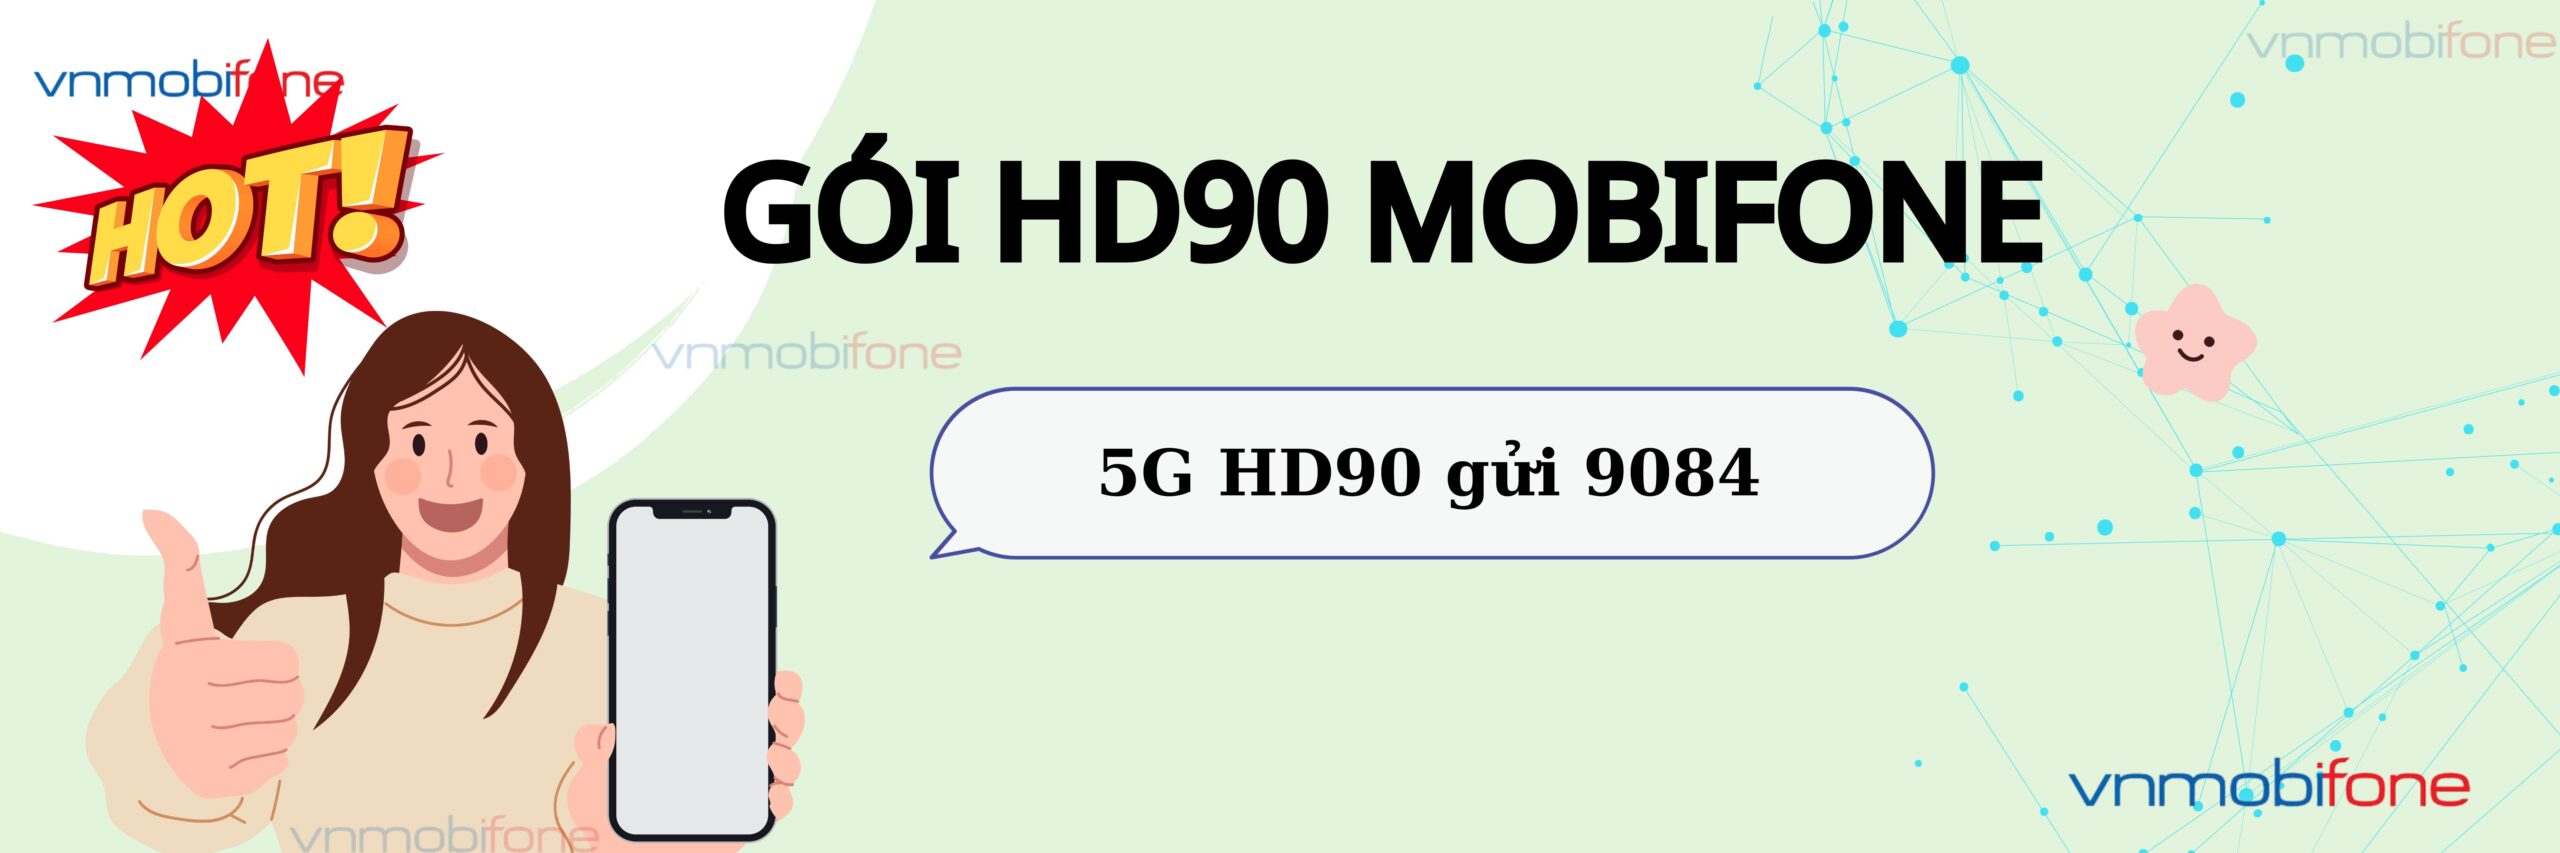 đăng ký gói hd90 mobifone